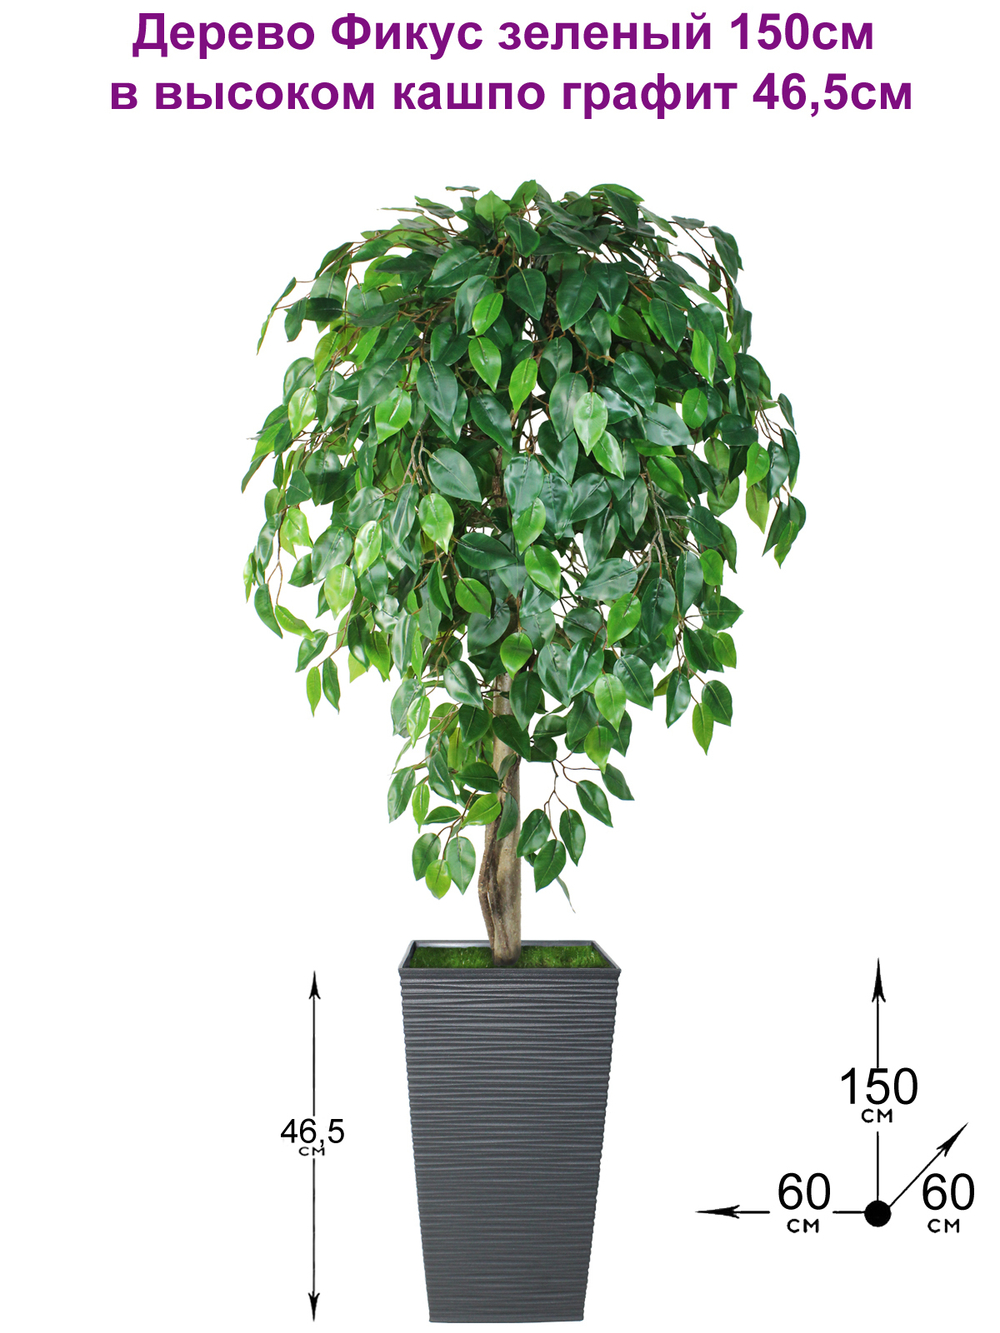 Искусственное дерево Фикус зеленый 150см в высоком кашпо графит 46 см